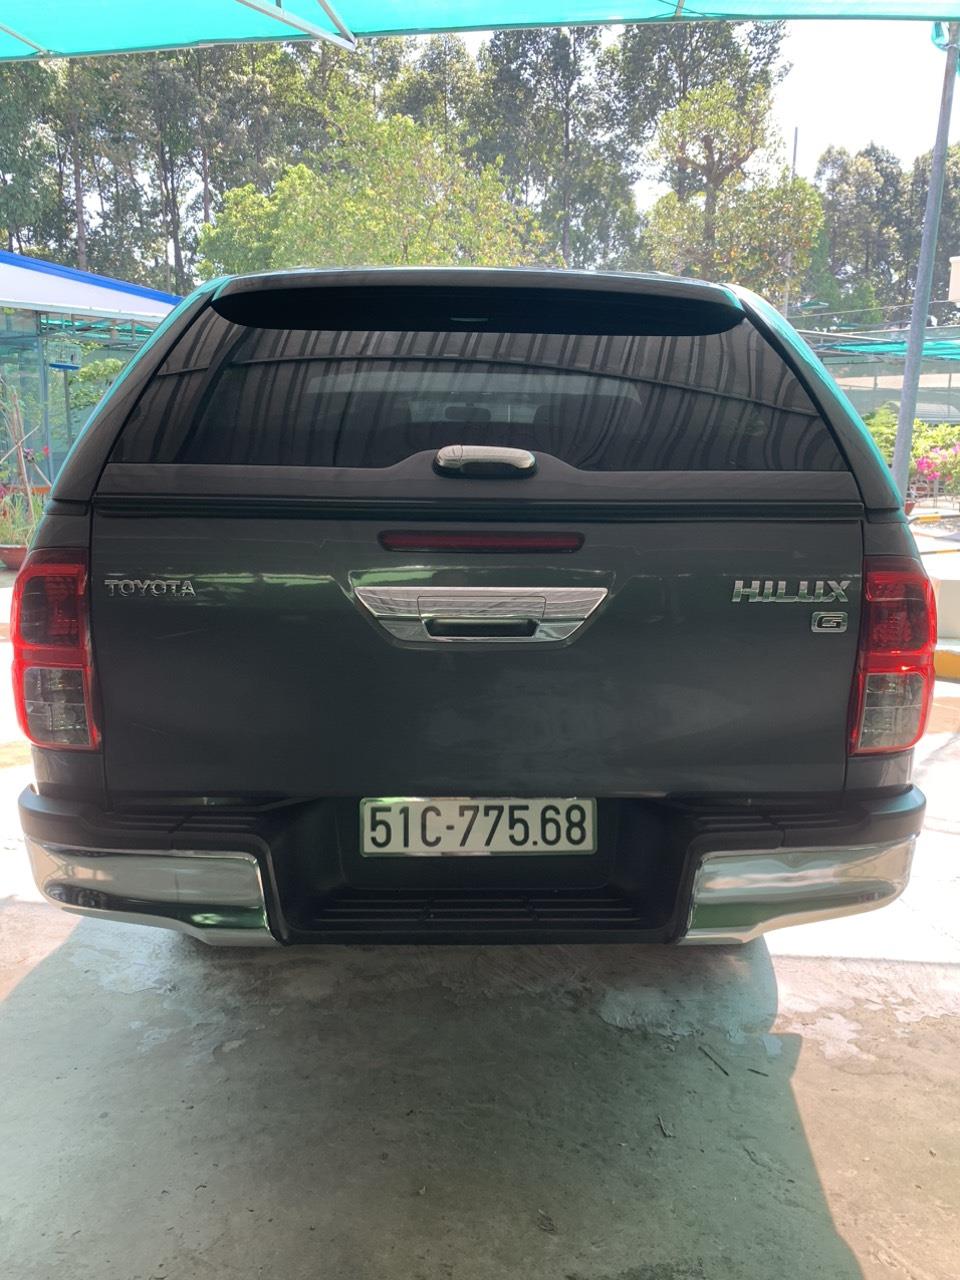 Xe nhập từ Thái Lan, Toyota Hillus đời 2016 , giấy tờ hợp lệ995786